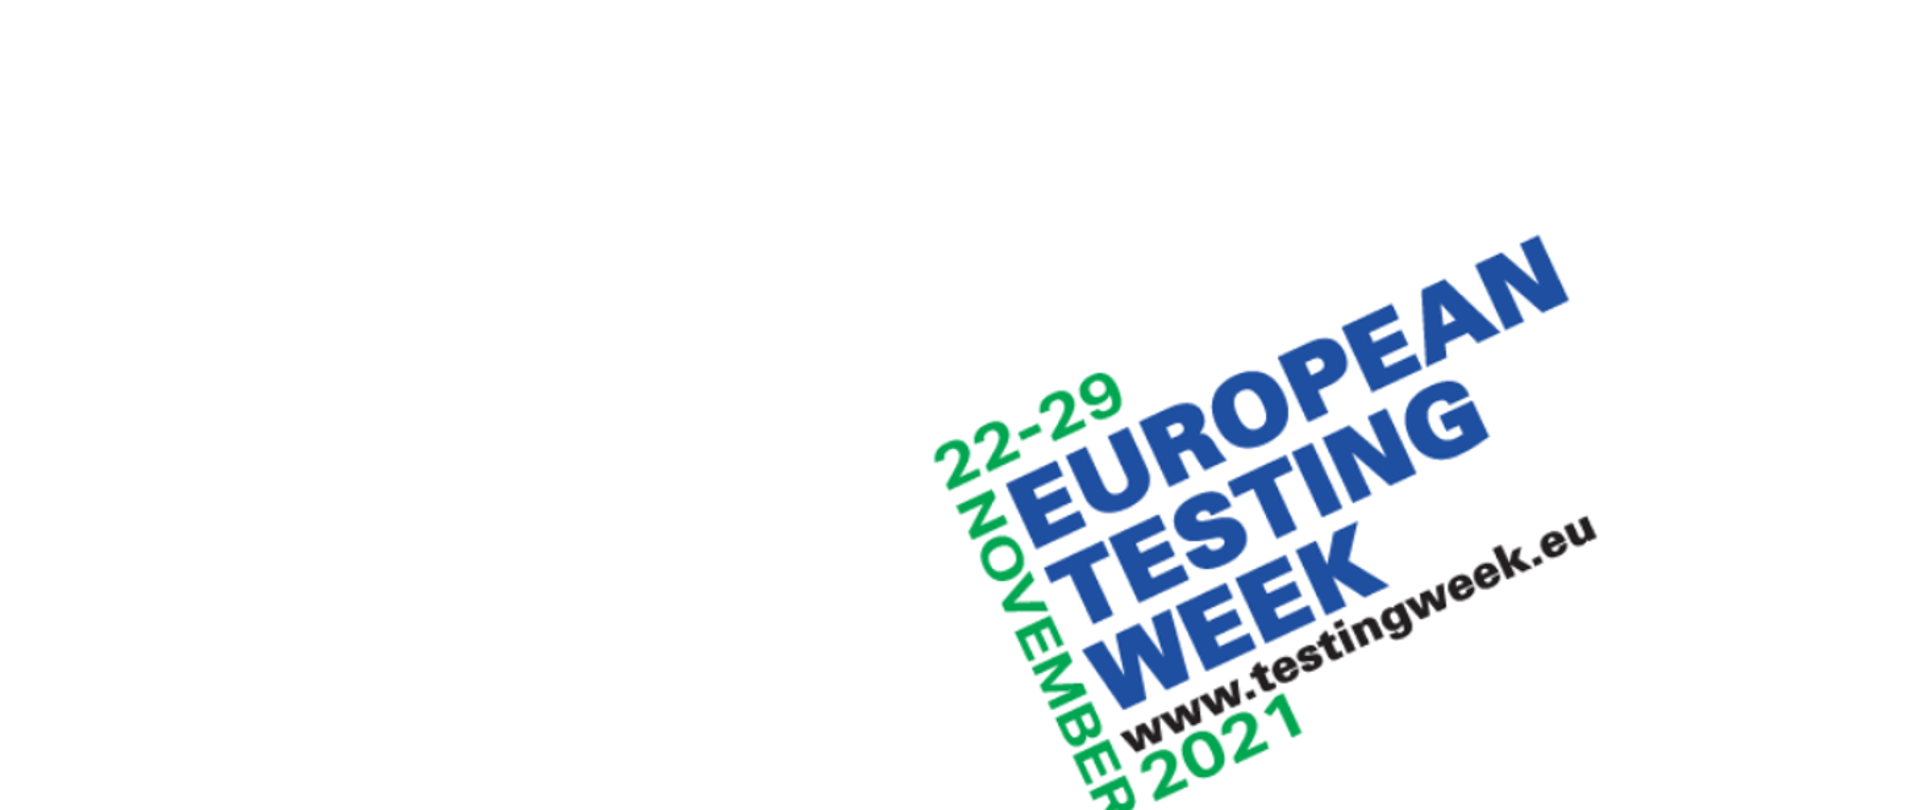 Grafika z logotypem Europejskiego Tygodnia Testowania 2021: 22-29 November 2021. European Testing Week. www.testingweek.eu